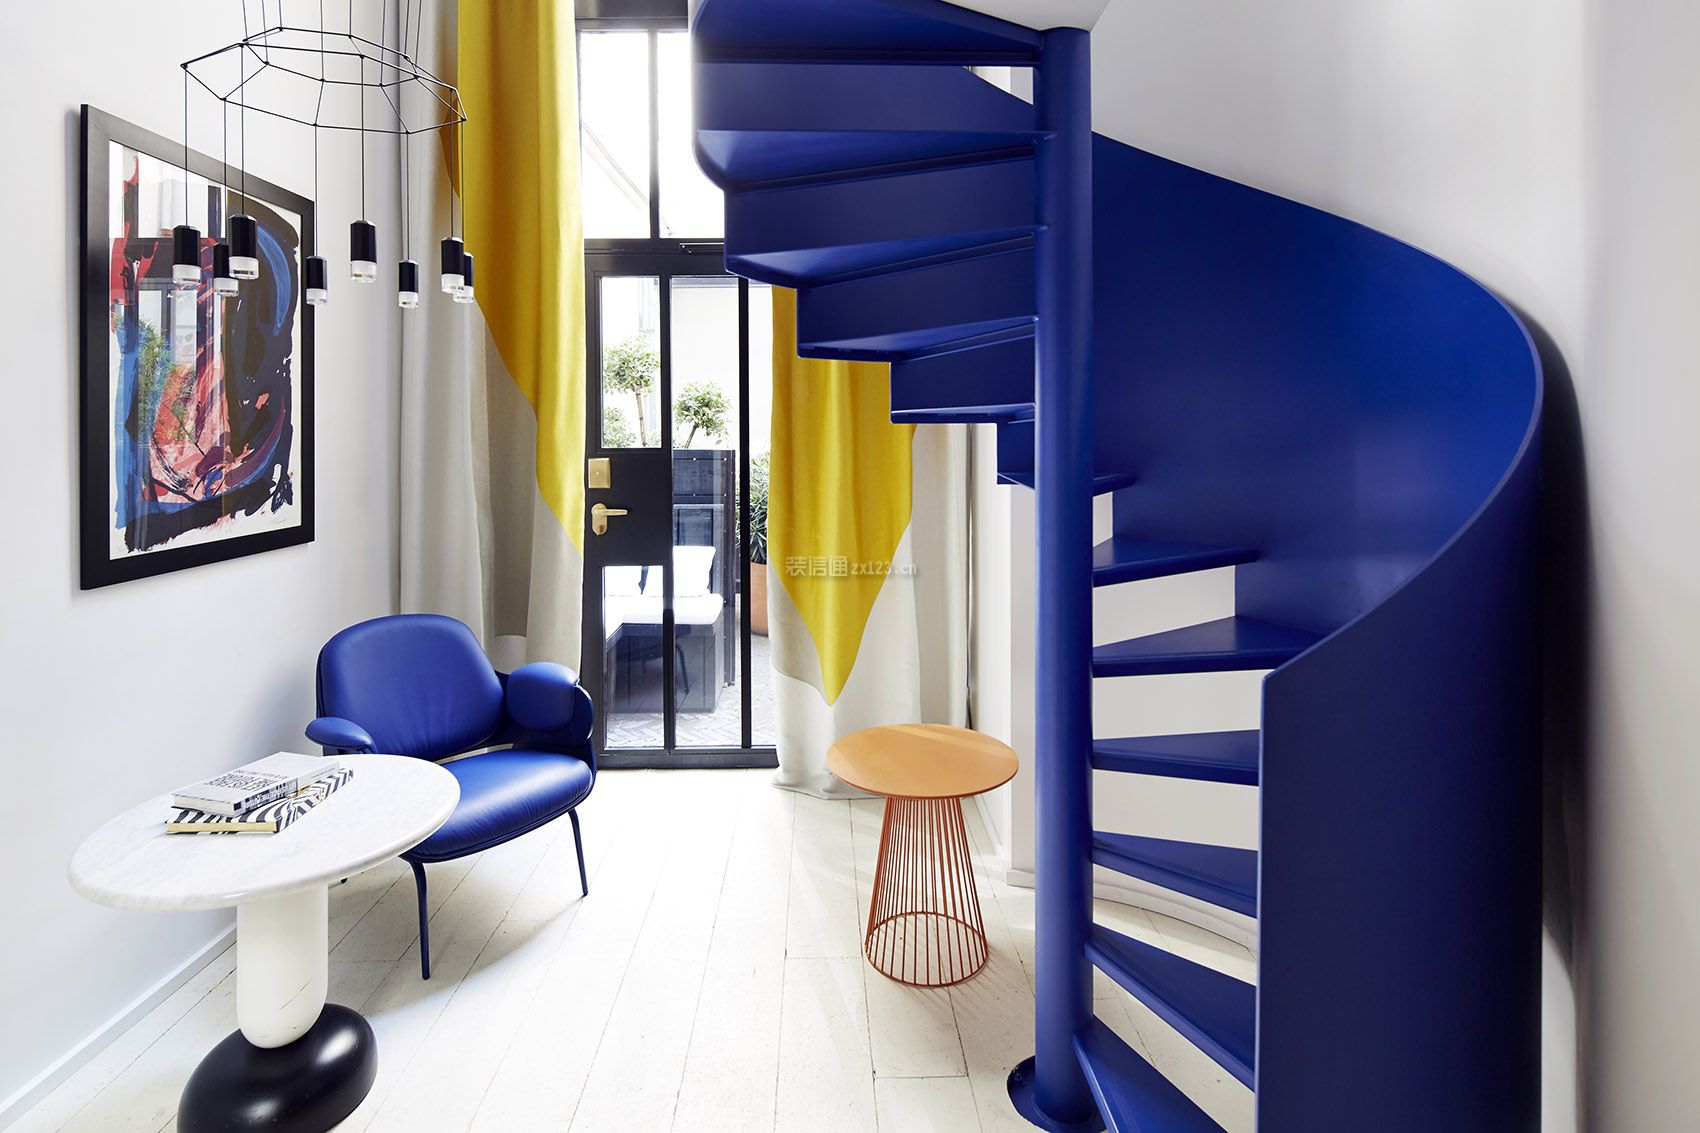 工装效果图 北欧 现代北欧风格1200平米主题酒店蓝色楼梯装修图片